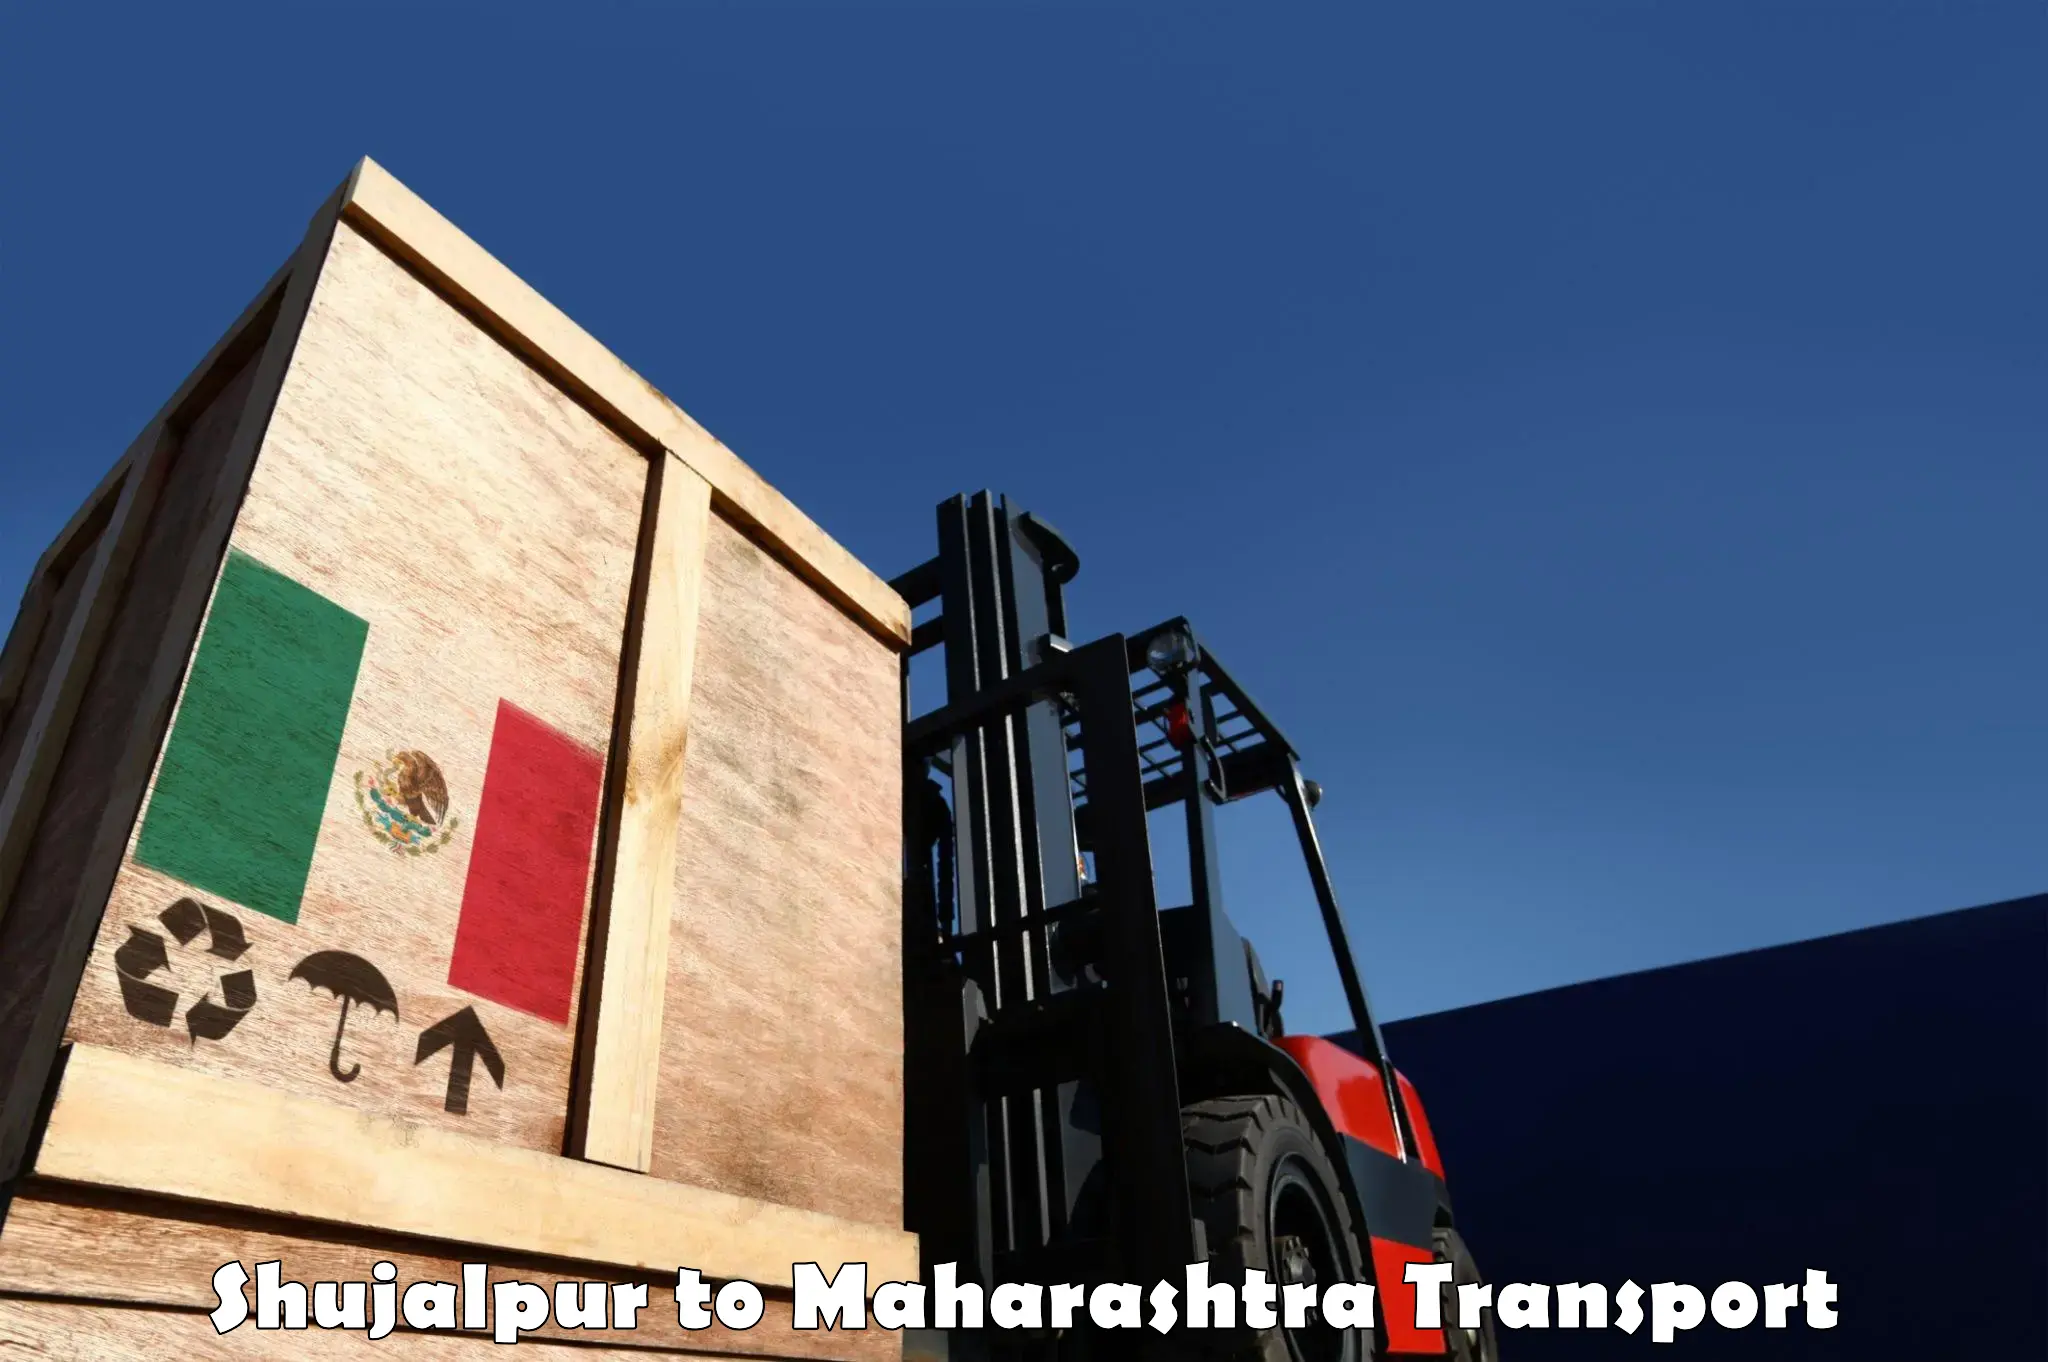 Daily transport service Shujalpur to Gangapur Aurangabad